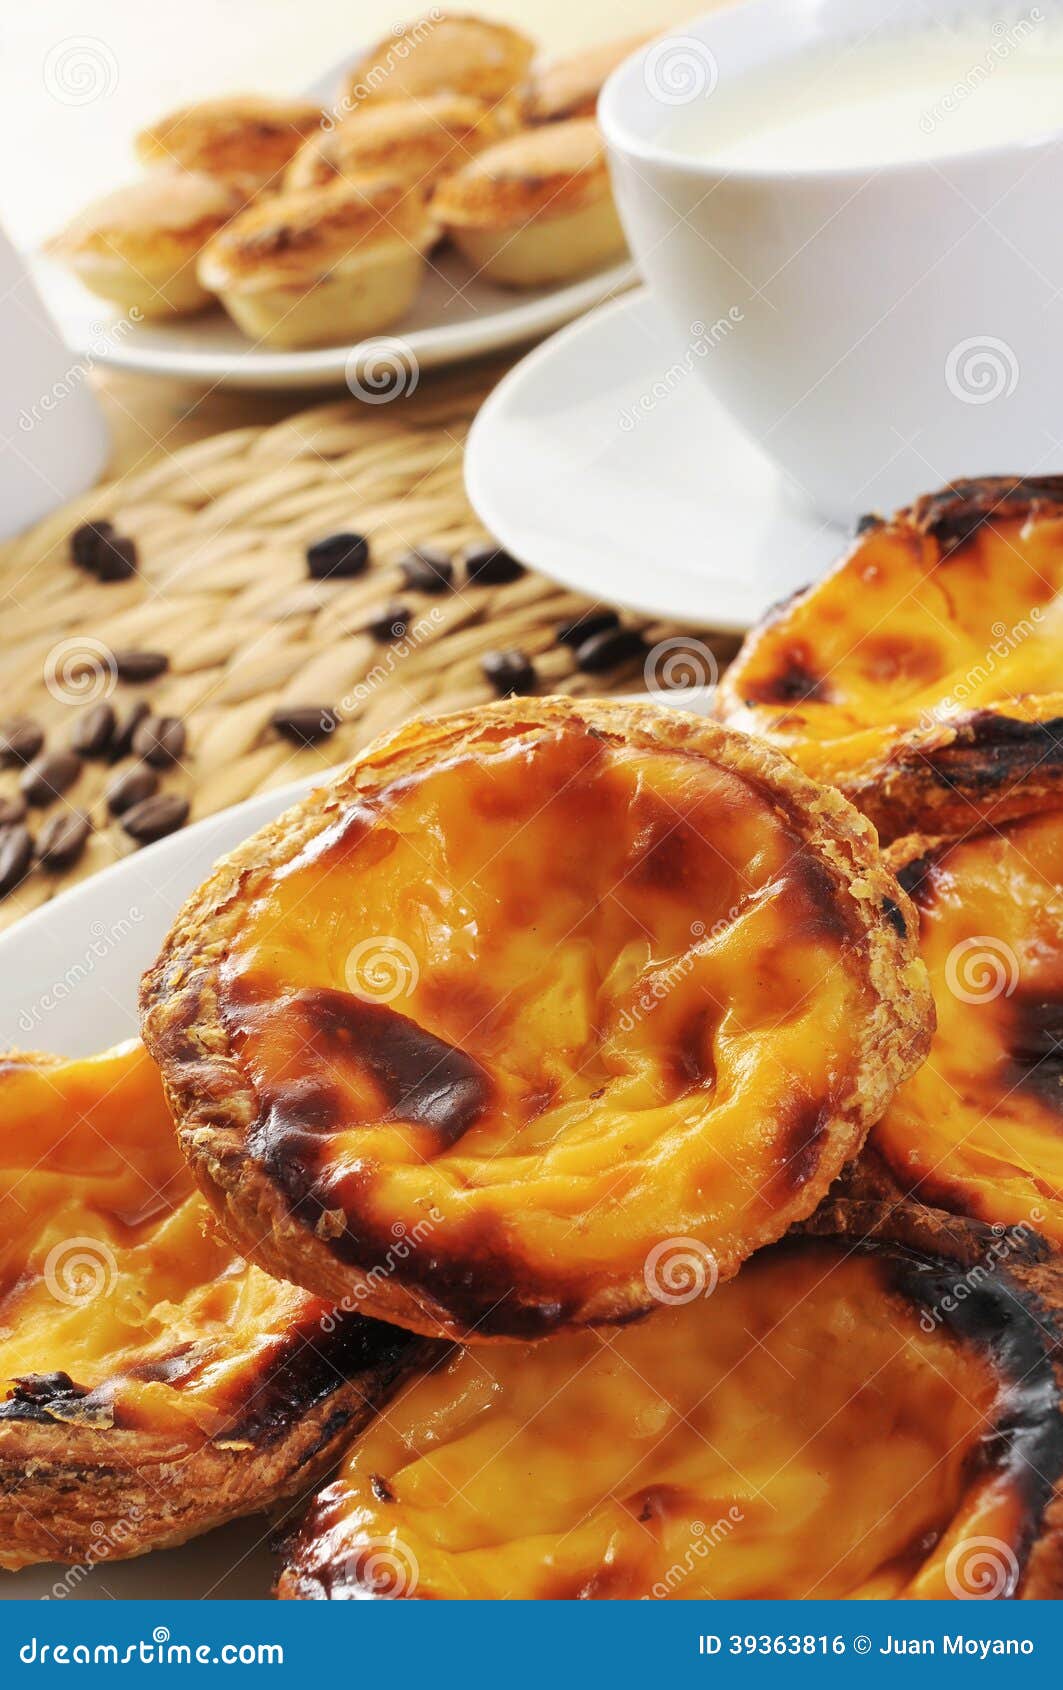 pasteis de nata and pasteis de feijao, typical portuguese pastries